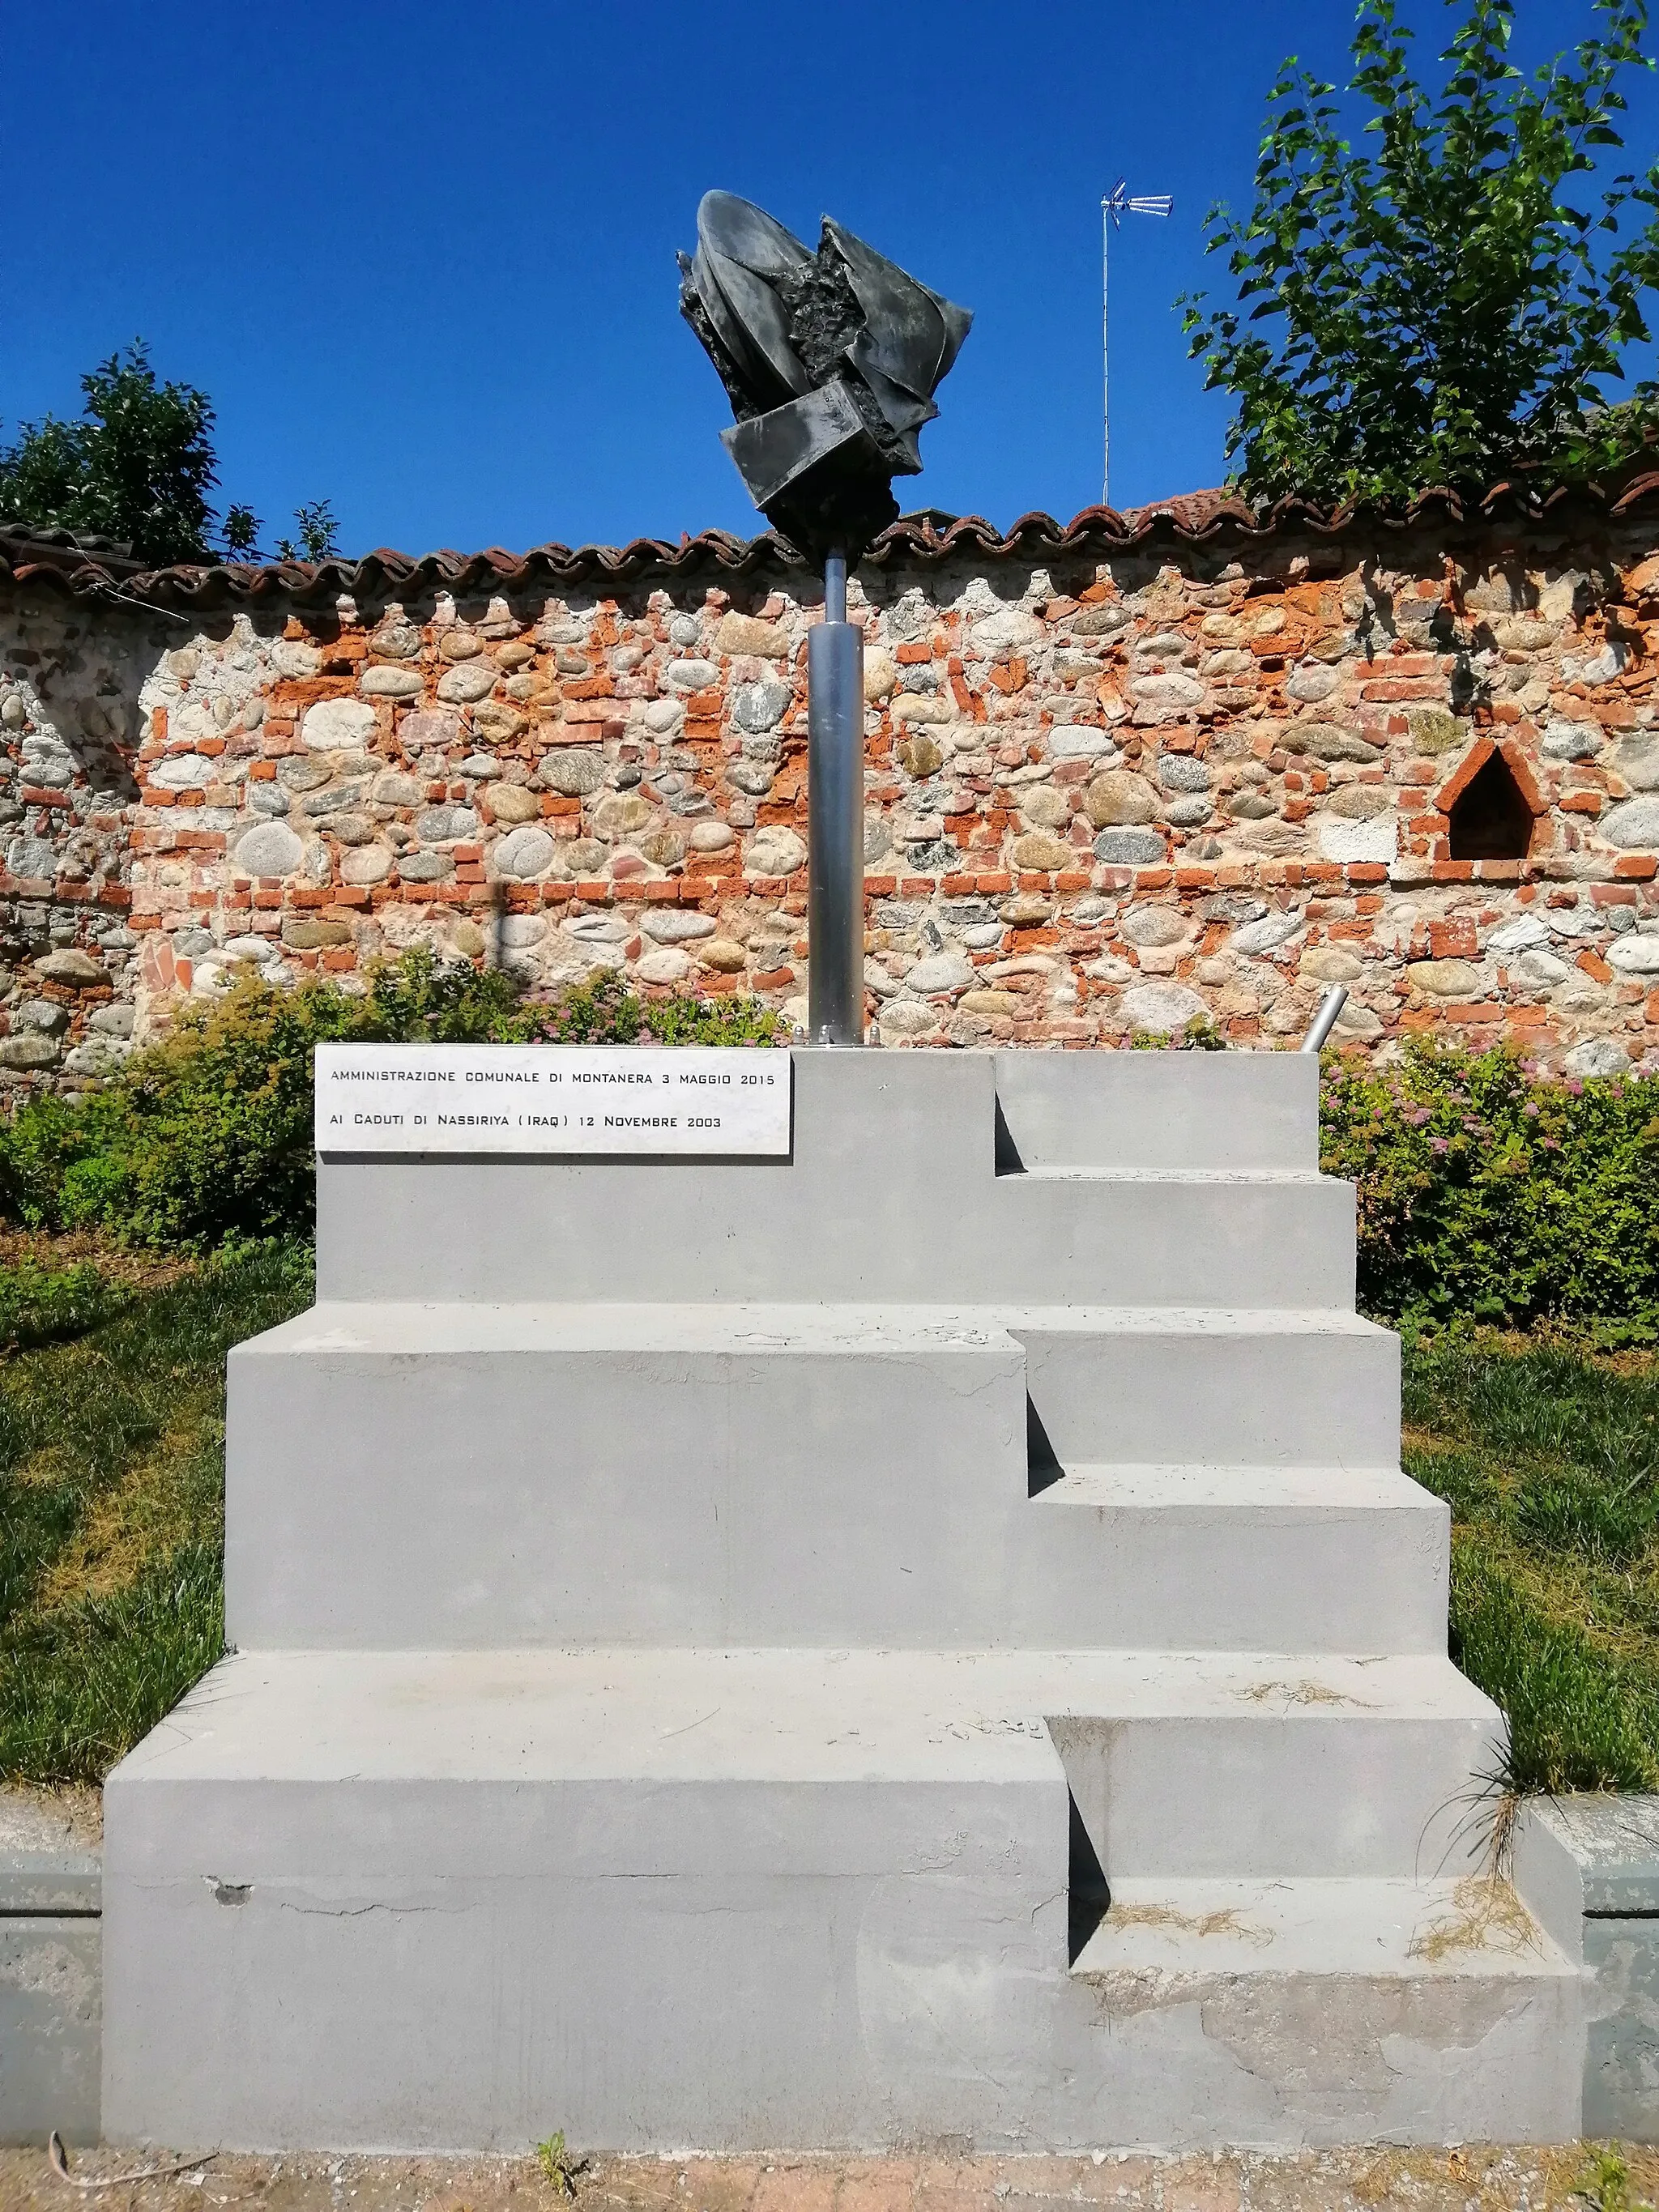 Photo showing: Questo monumento è per ricordare tutti i soldati caduti in guerra in Nassiriya